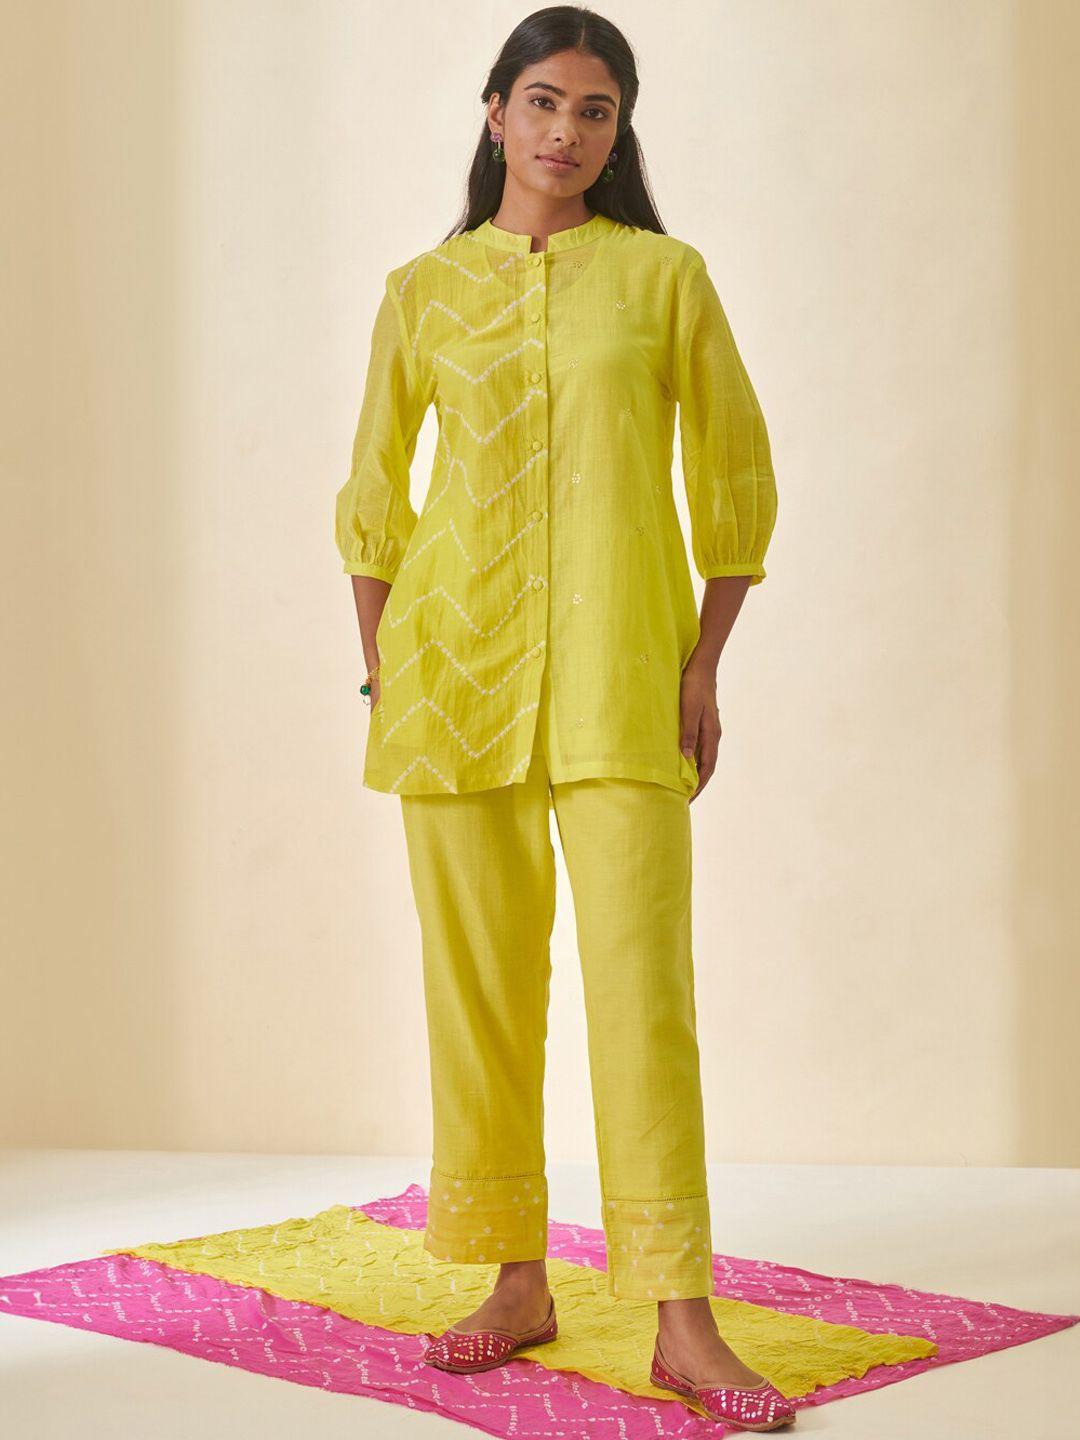 prakriti-jaipur-women-mid-rise-cotton-dobby-ethnic-trouser